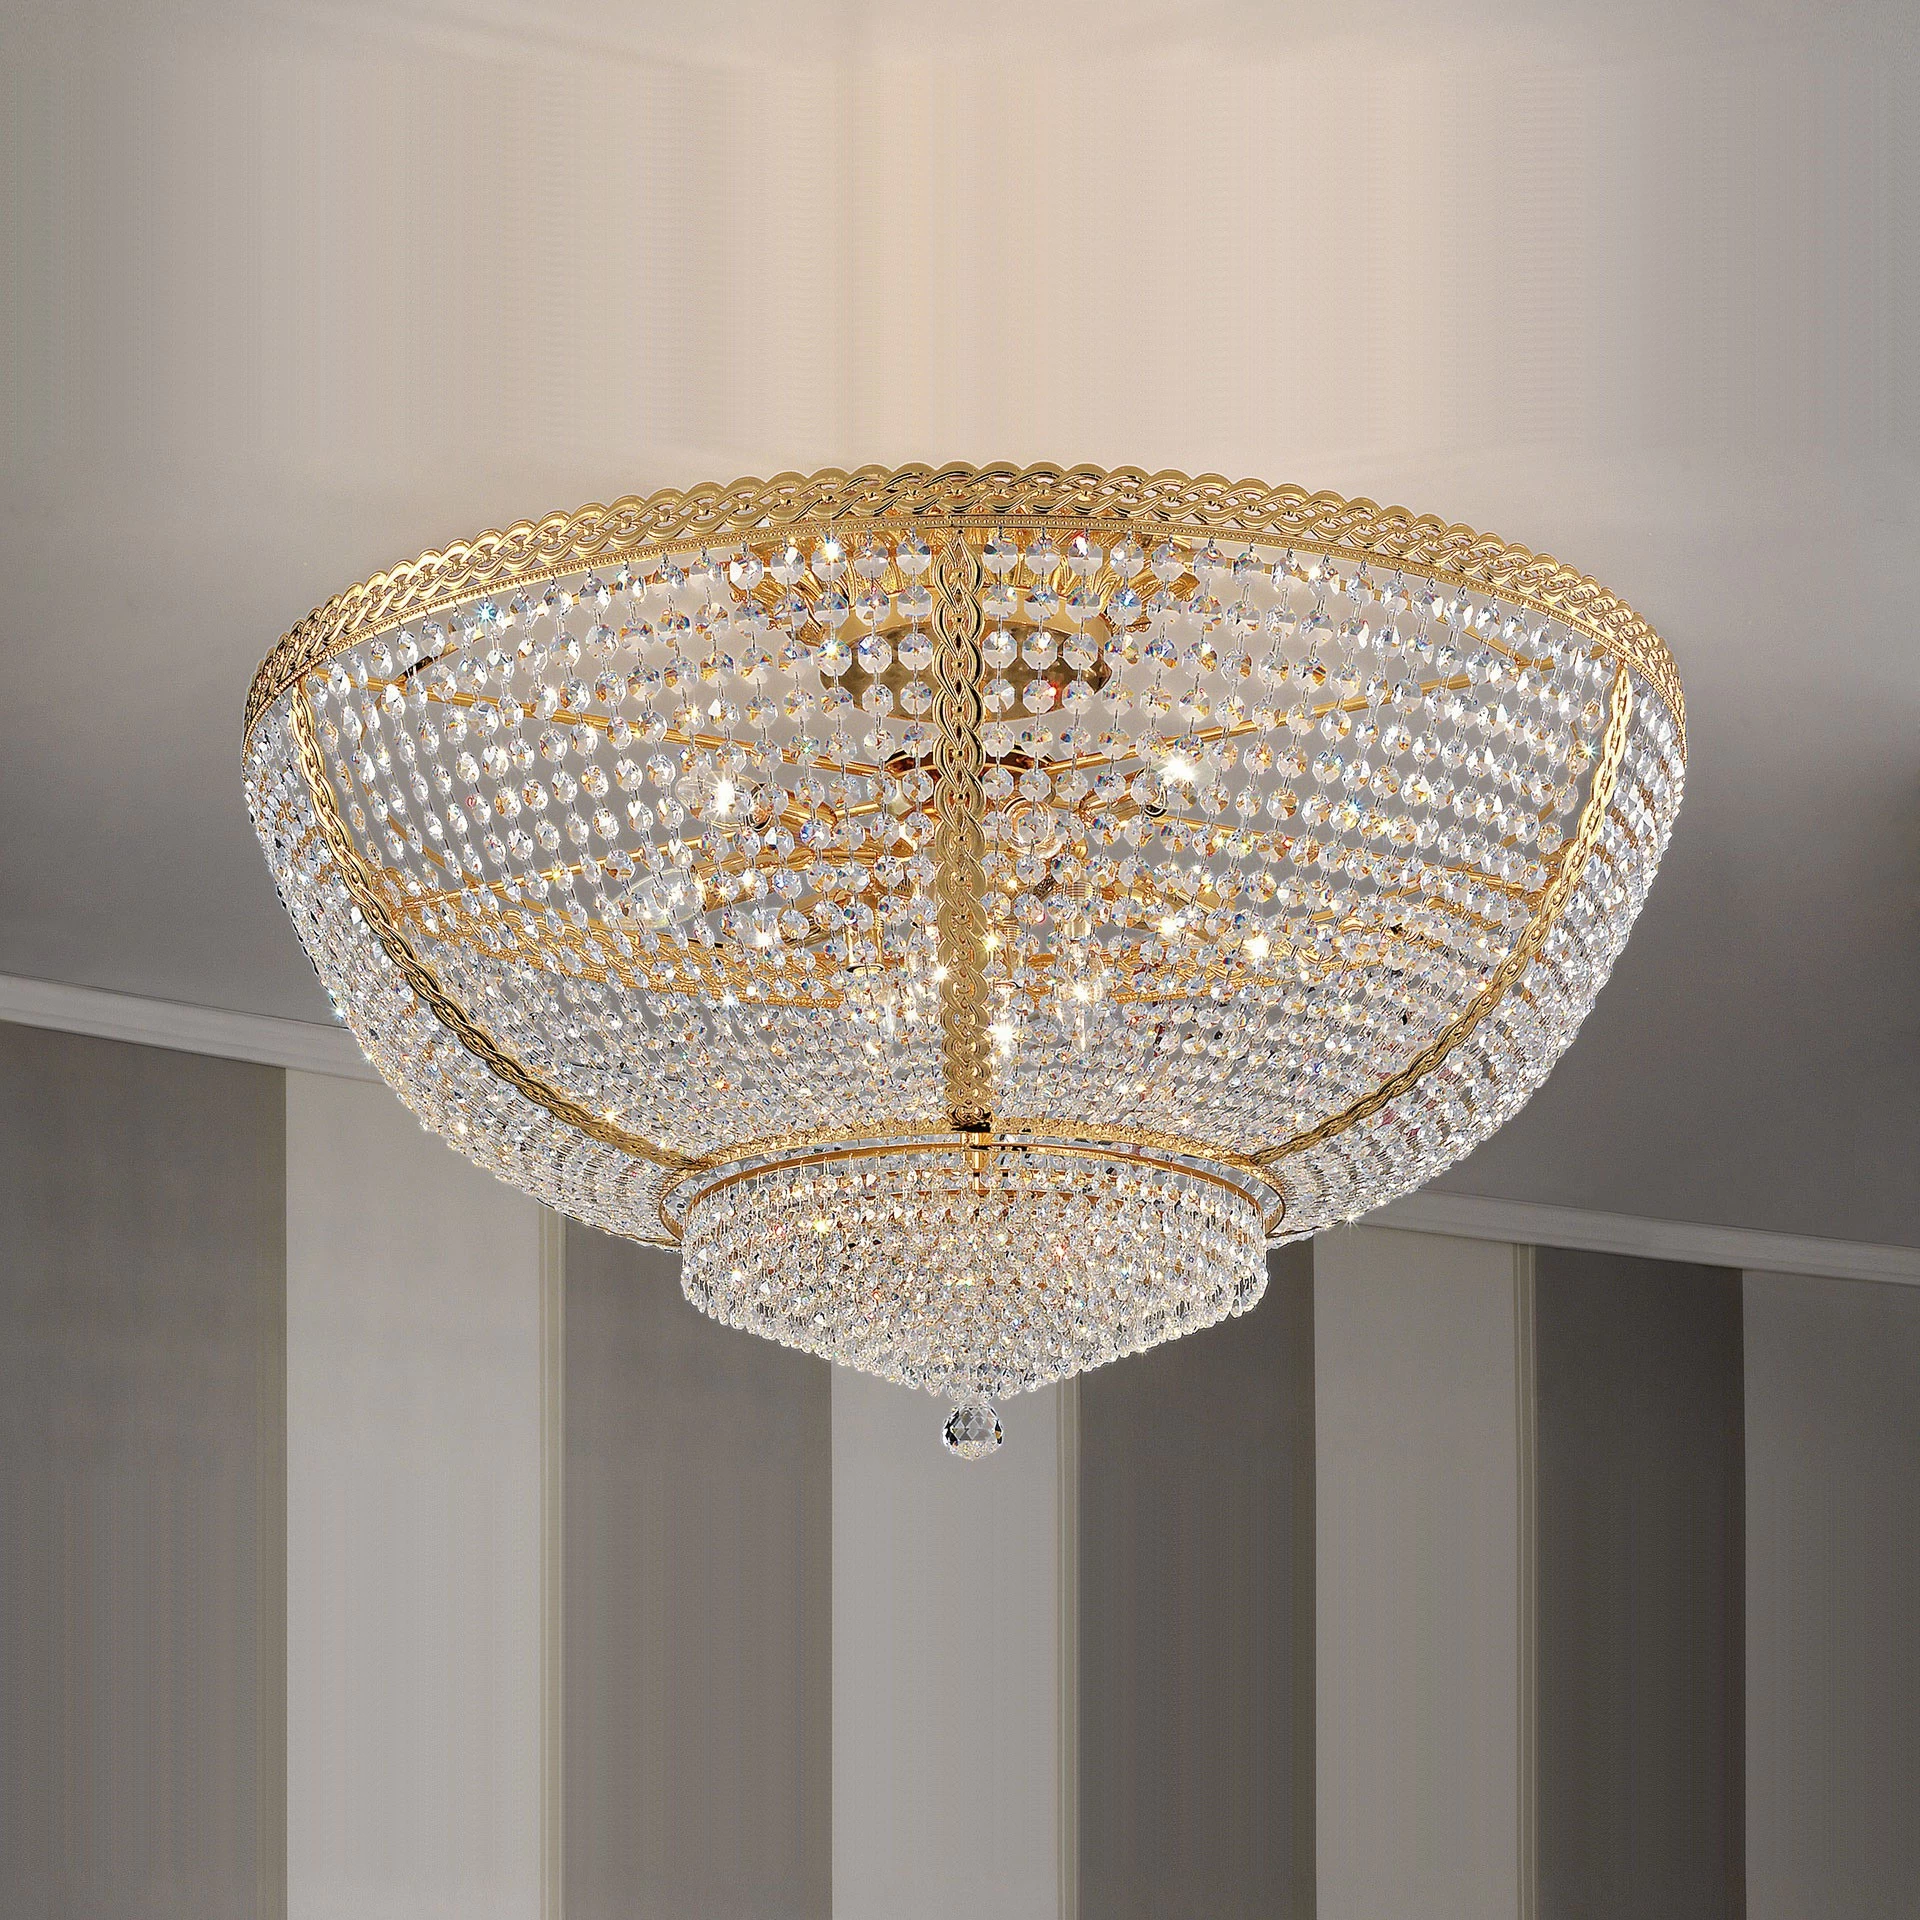 39" flush mount crystal basket chandelier